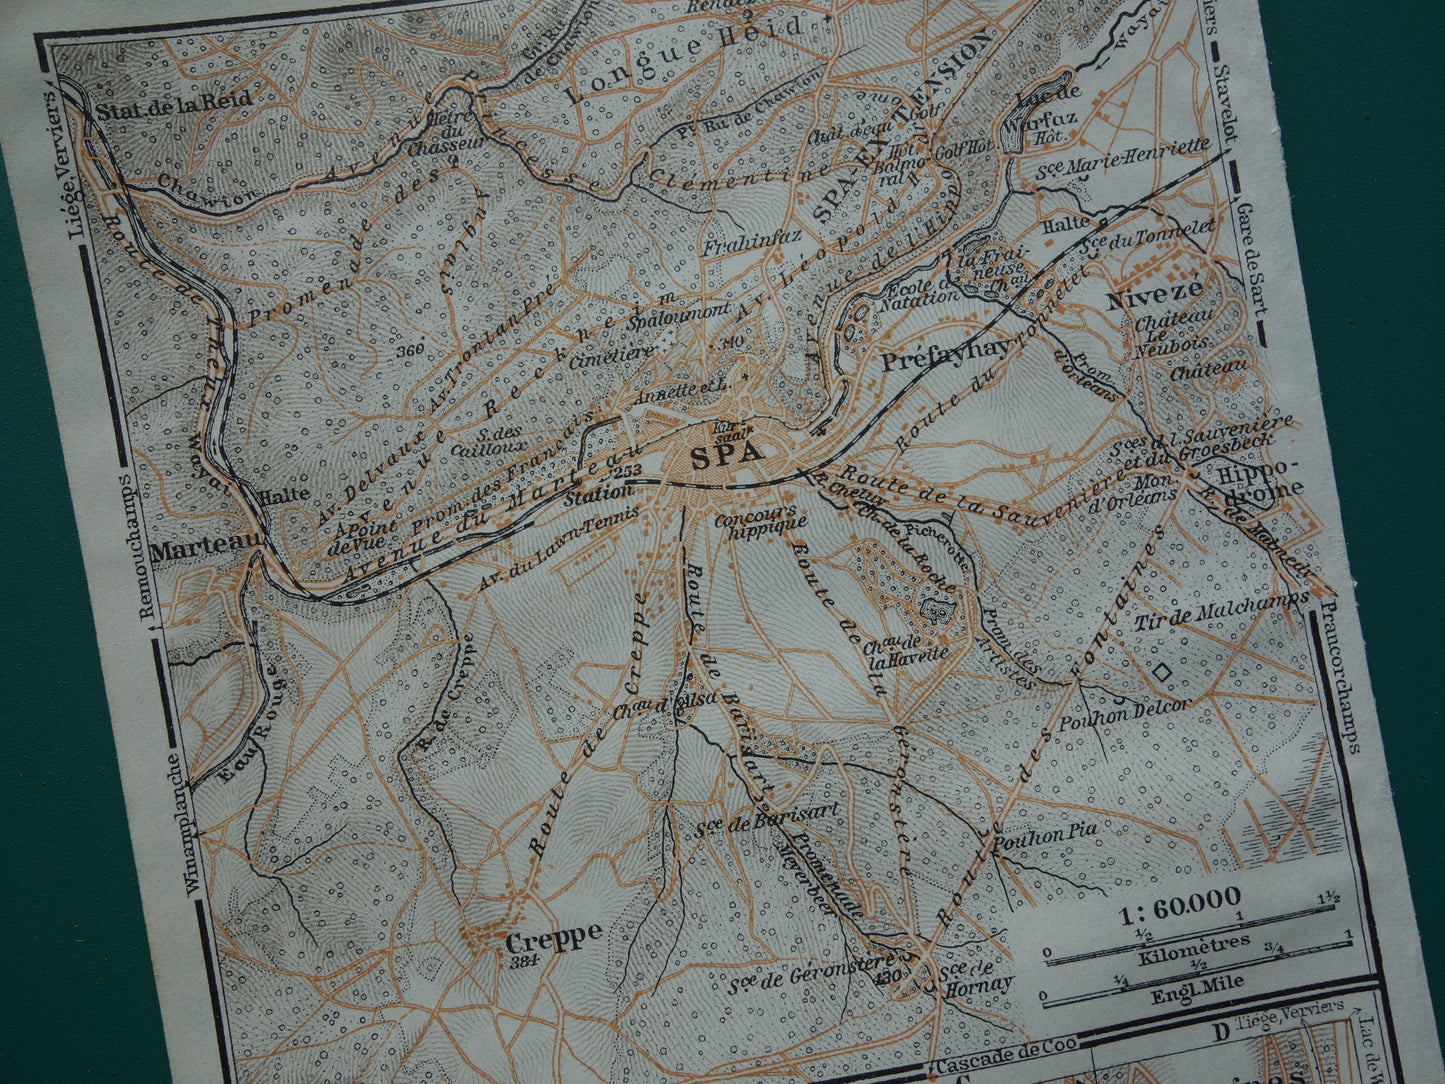 SPA oude kaart van Spa België uit 1914 kleine originele antieke plattegrond landkaart Spa